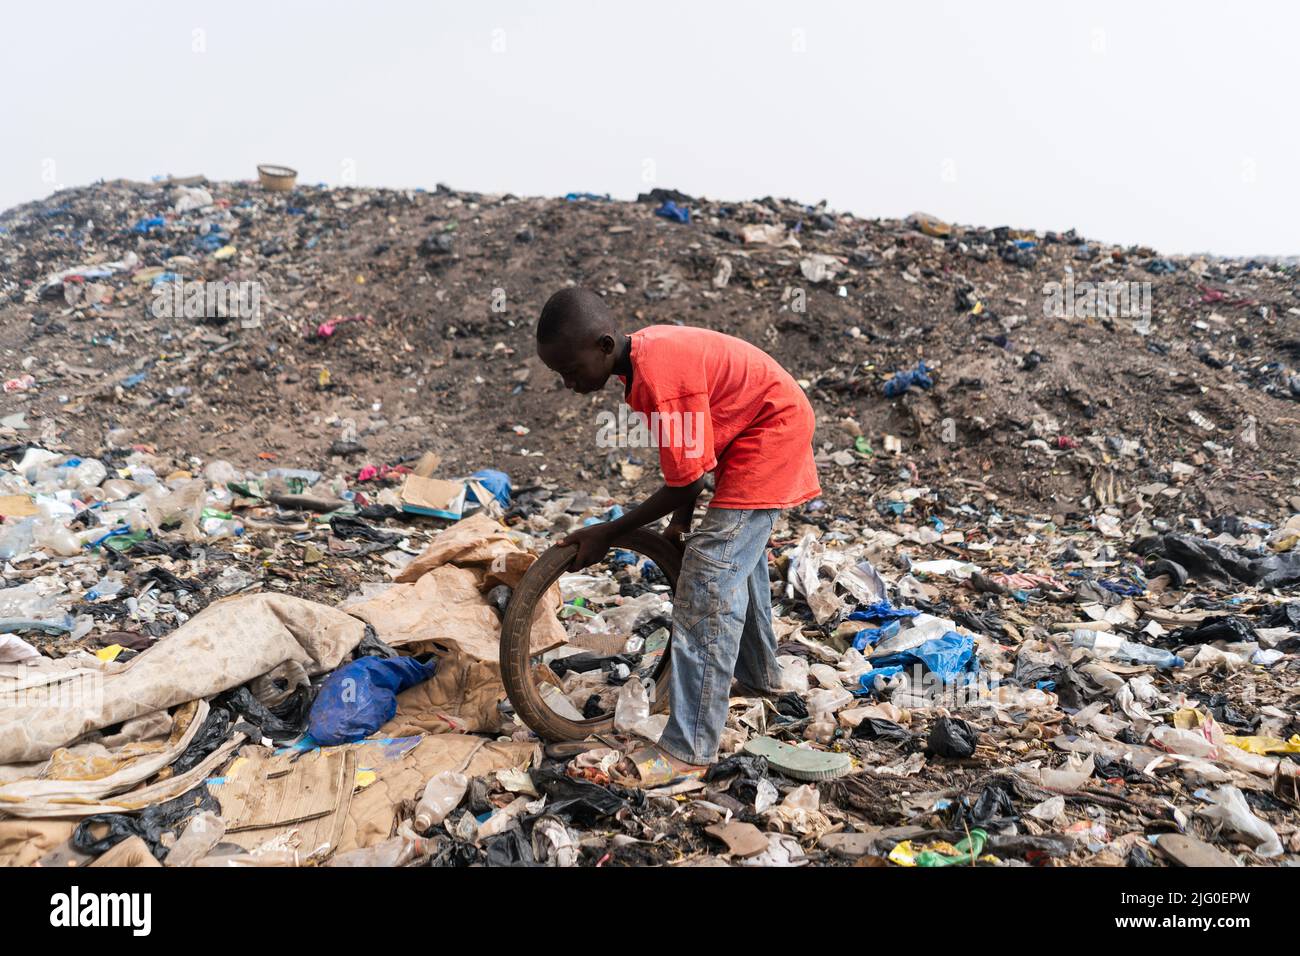 Vue latérale d'un jeune africain debout dans un dépotoir de déchets vérifiant si un vieux pneu de vélo qu'il a trouvé est encore utilisable pour réutiliser et vendre Banque D'Images